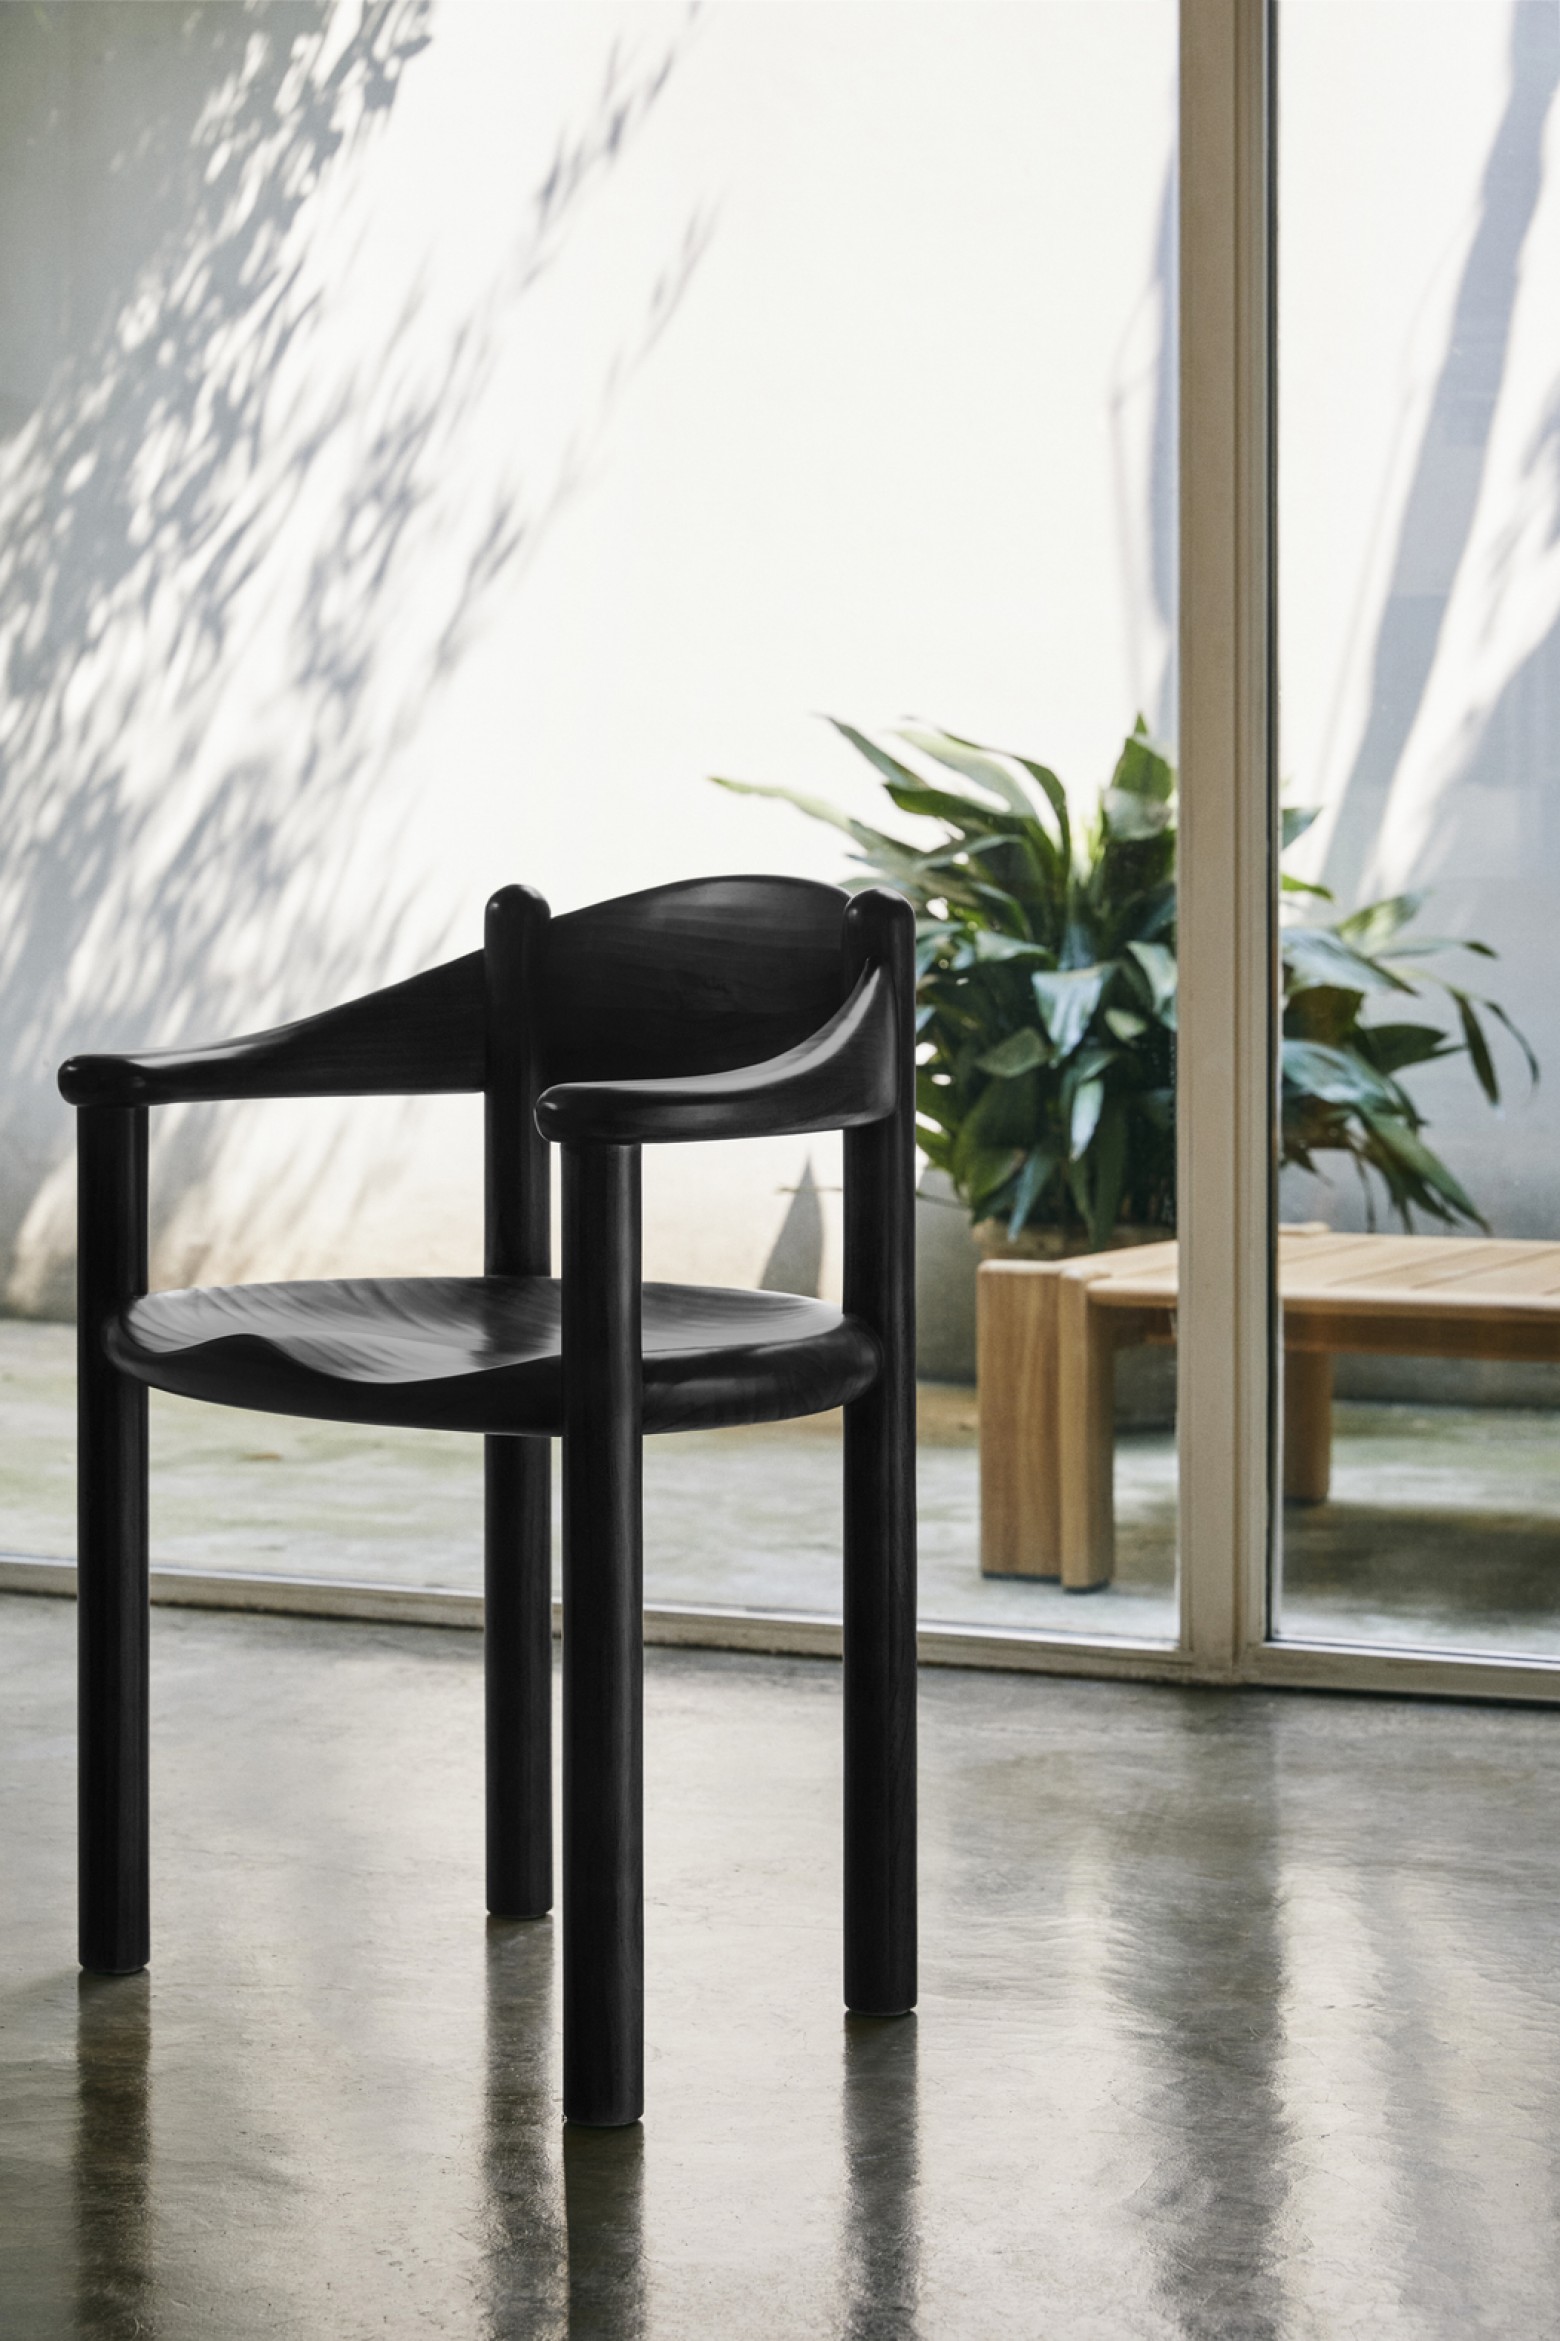 Nieuw: Daumiller in bruin-zwarte kleur   Victors Design Agency